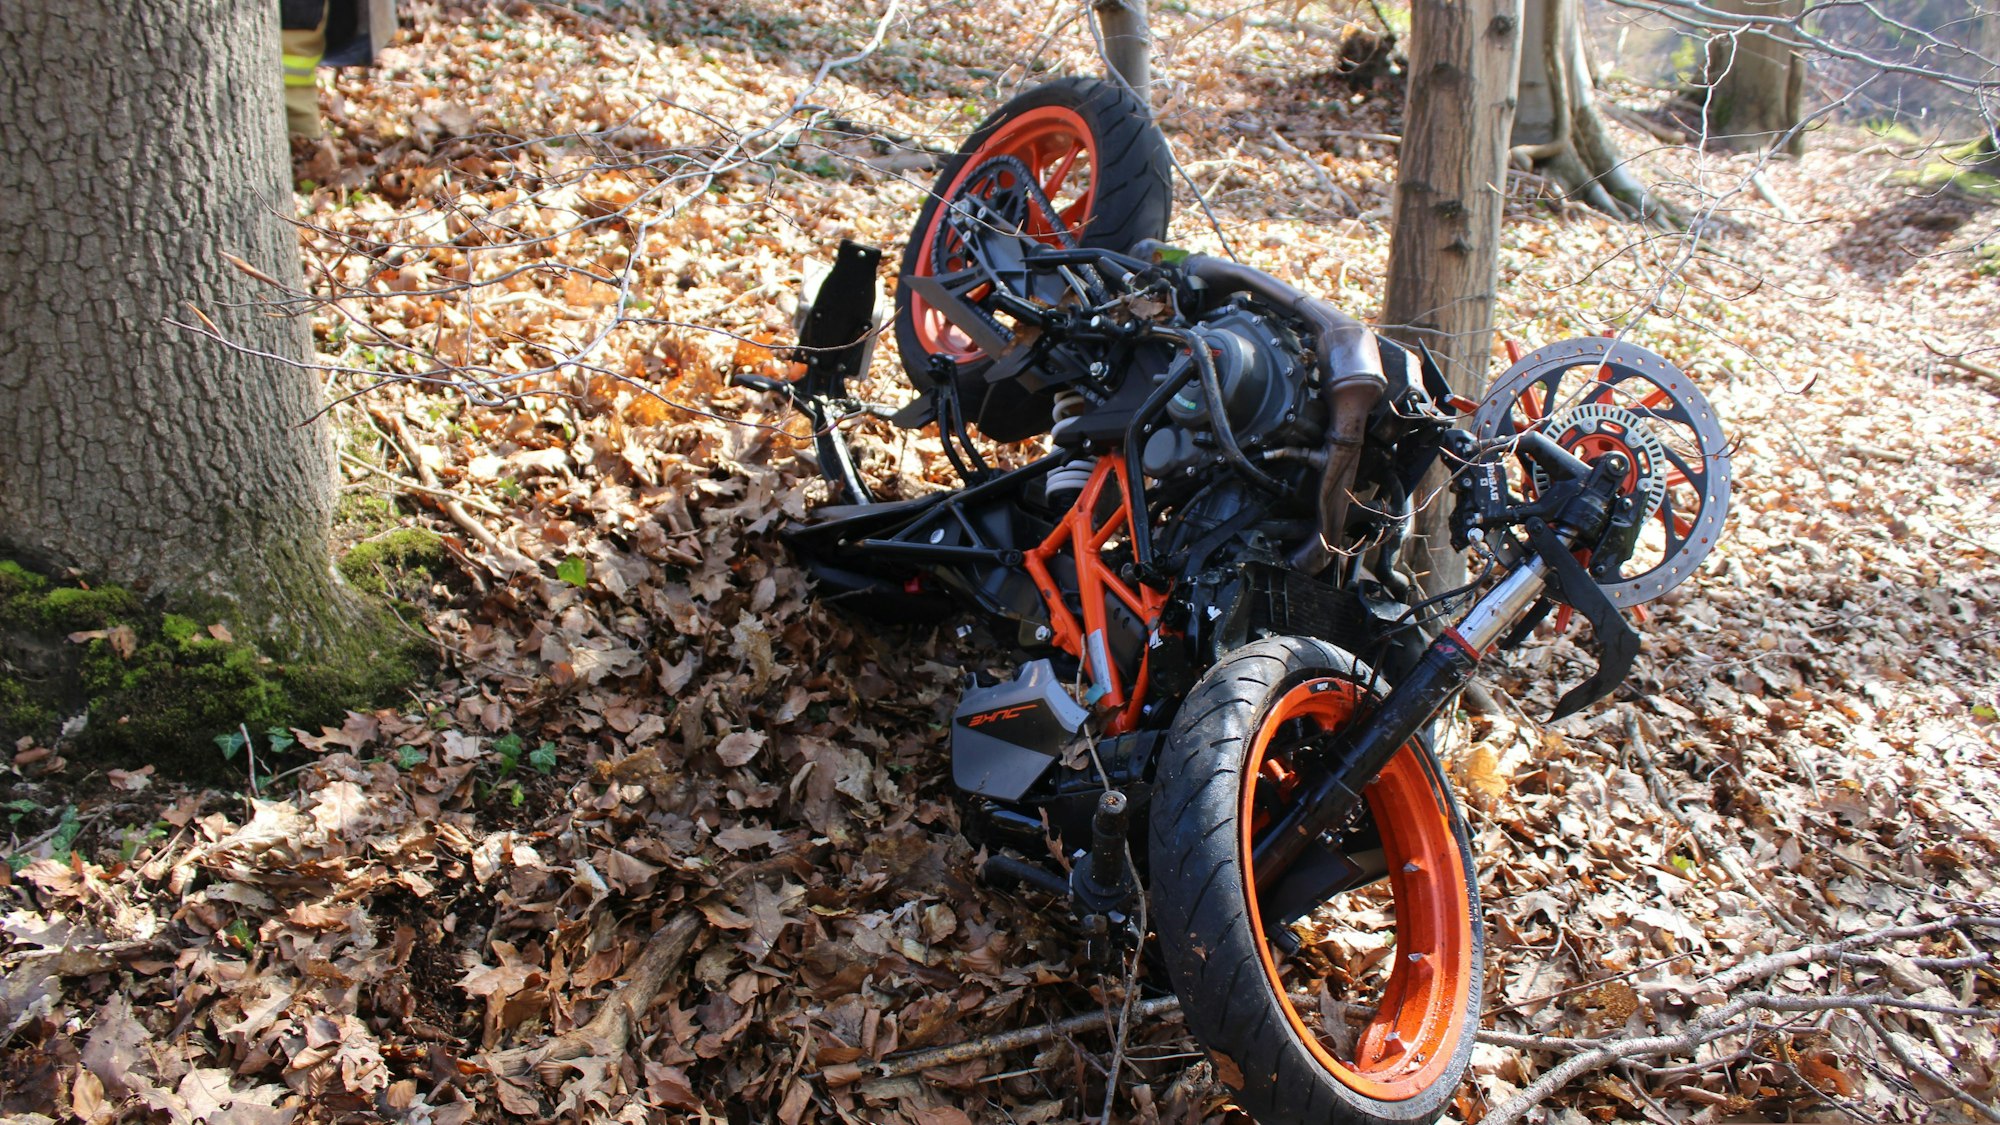 Ein schwer beschädigtes Motorrad liegt zwischen Bäumen in einem Wald.